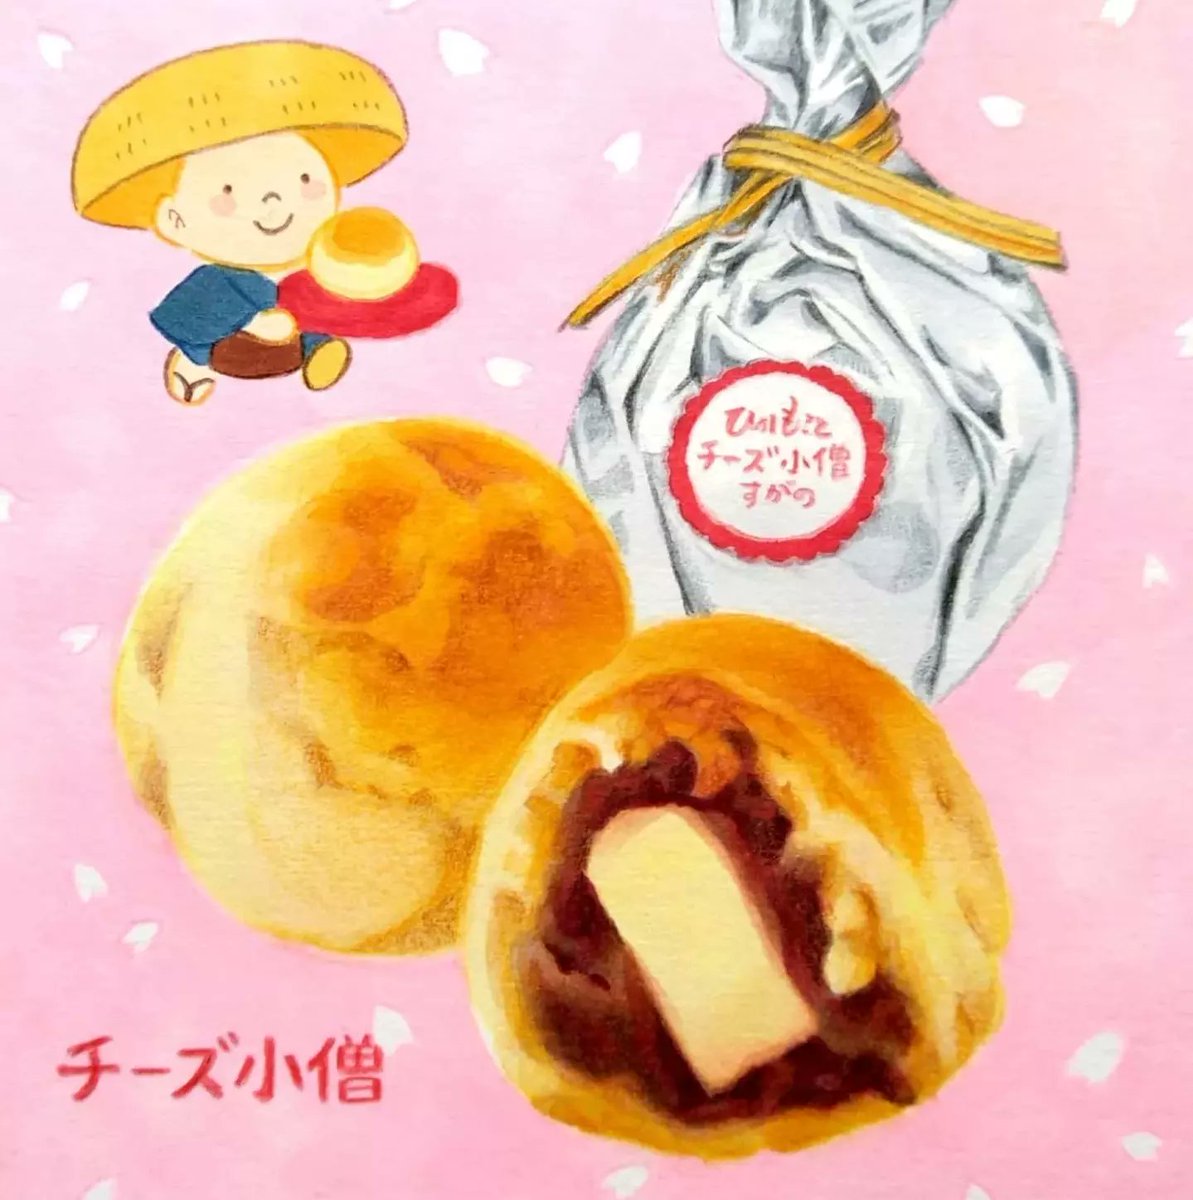 #ゴールデンウィークSNS展覧会2022 
最近描いた北海道のお菓子🌸
#イラスト 